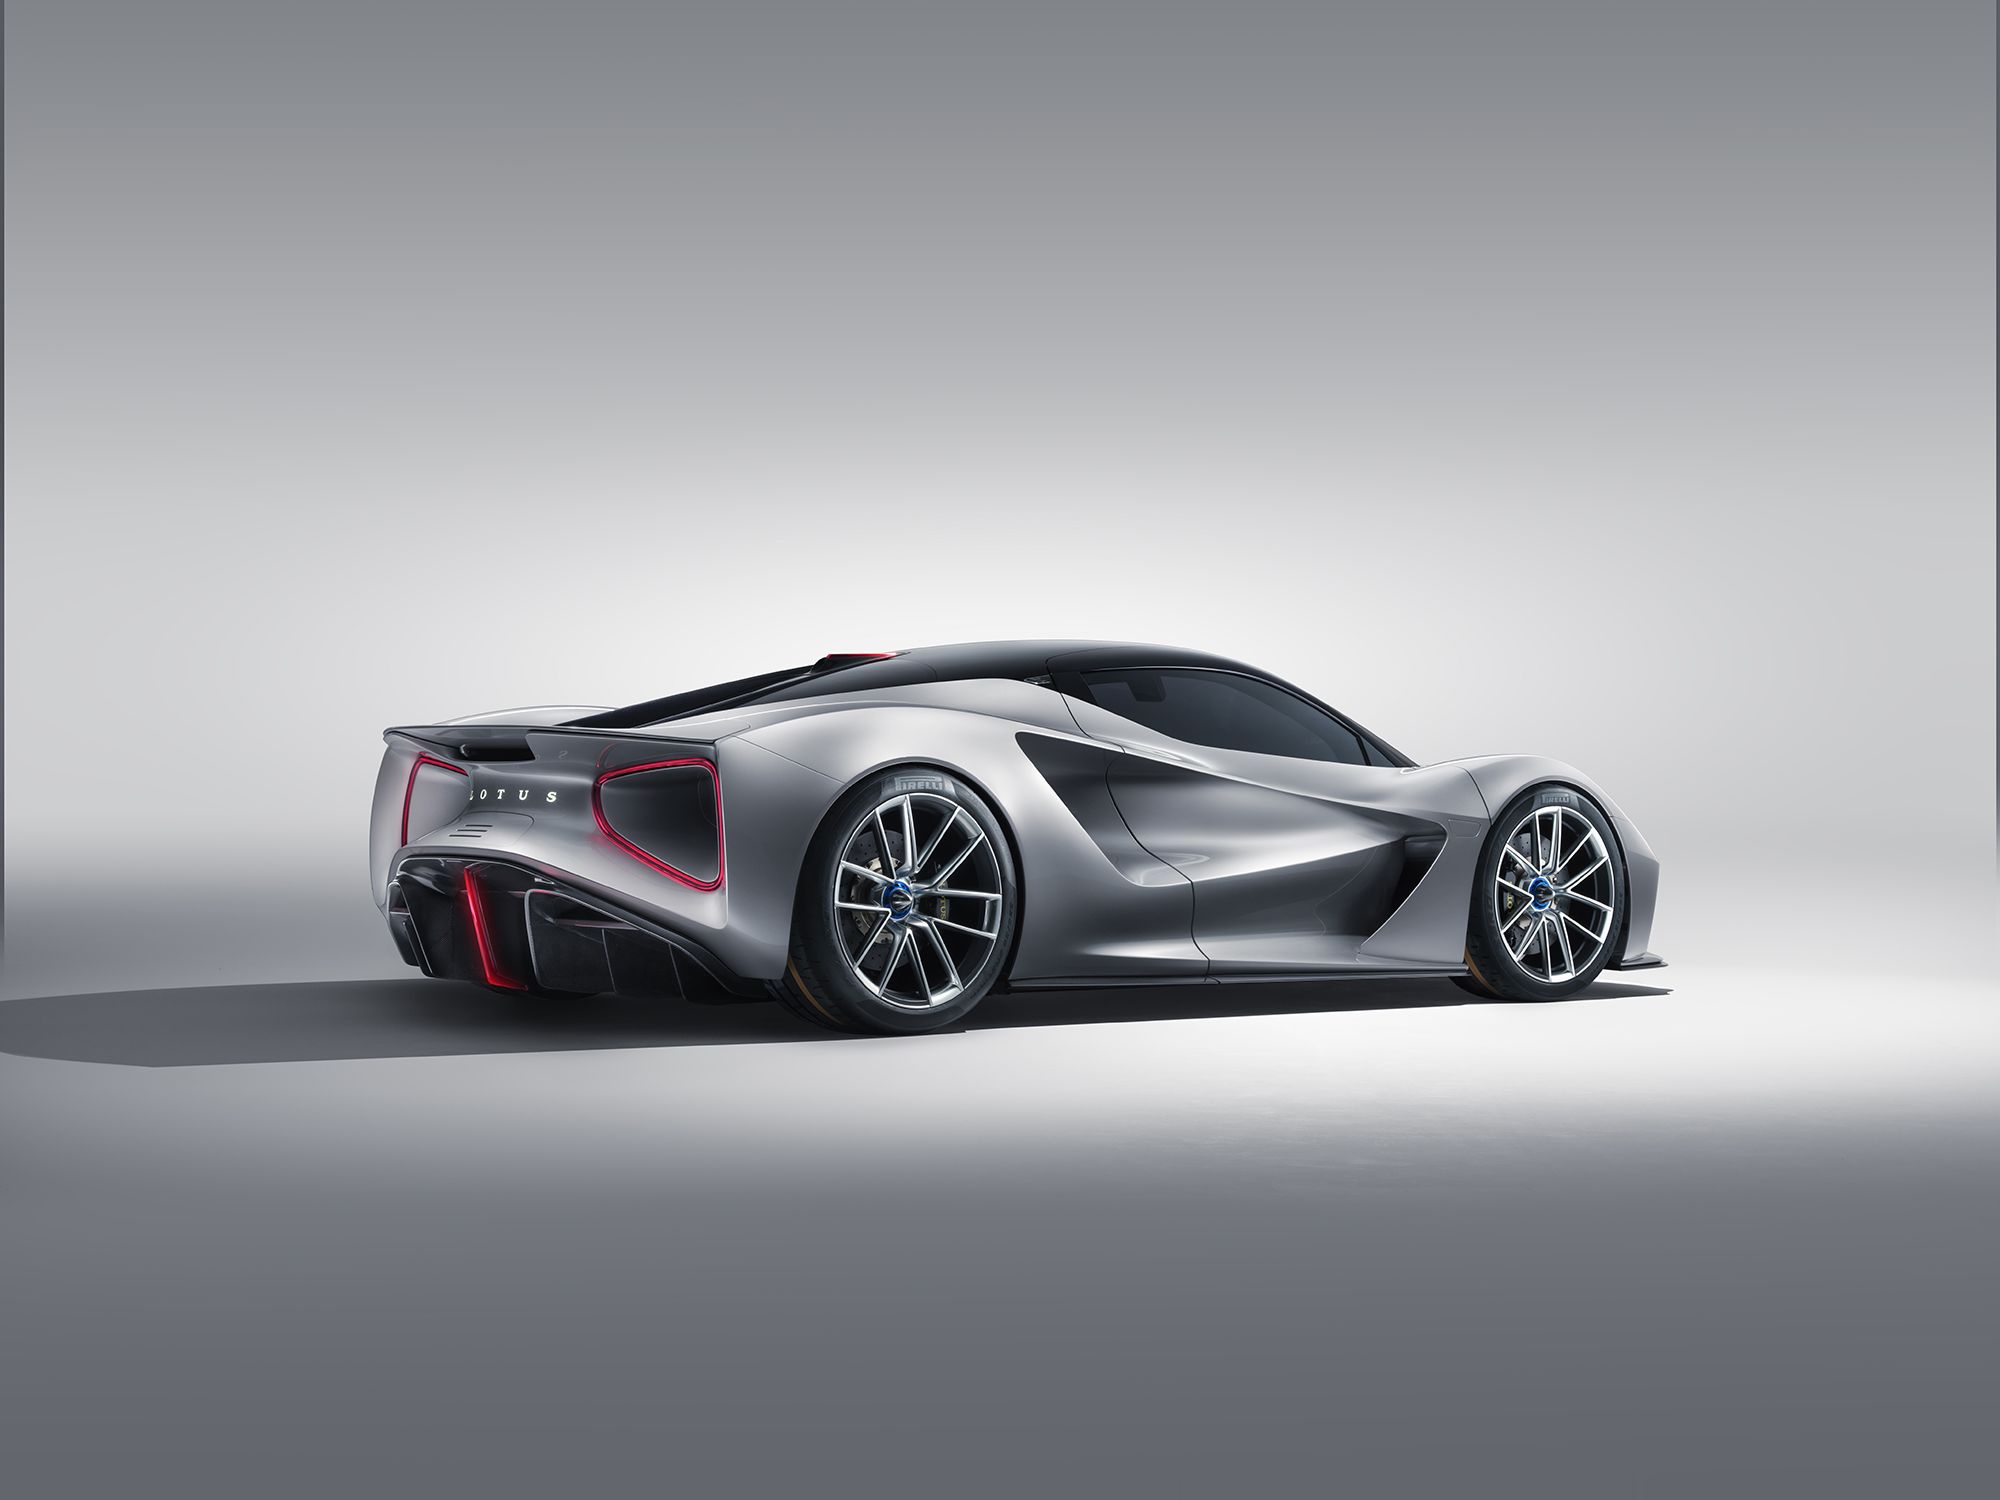 Lotus unveils $2 million electric supercar | CNN Business